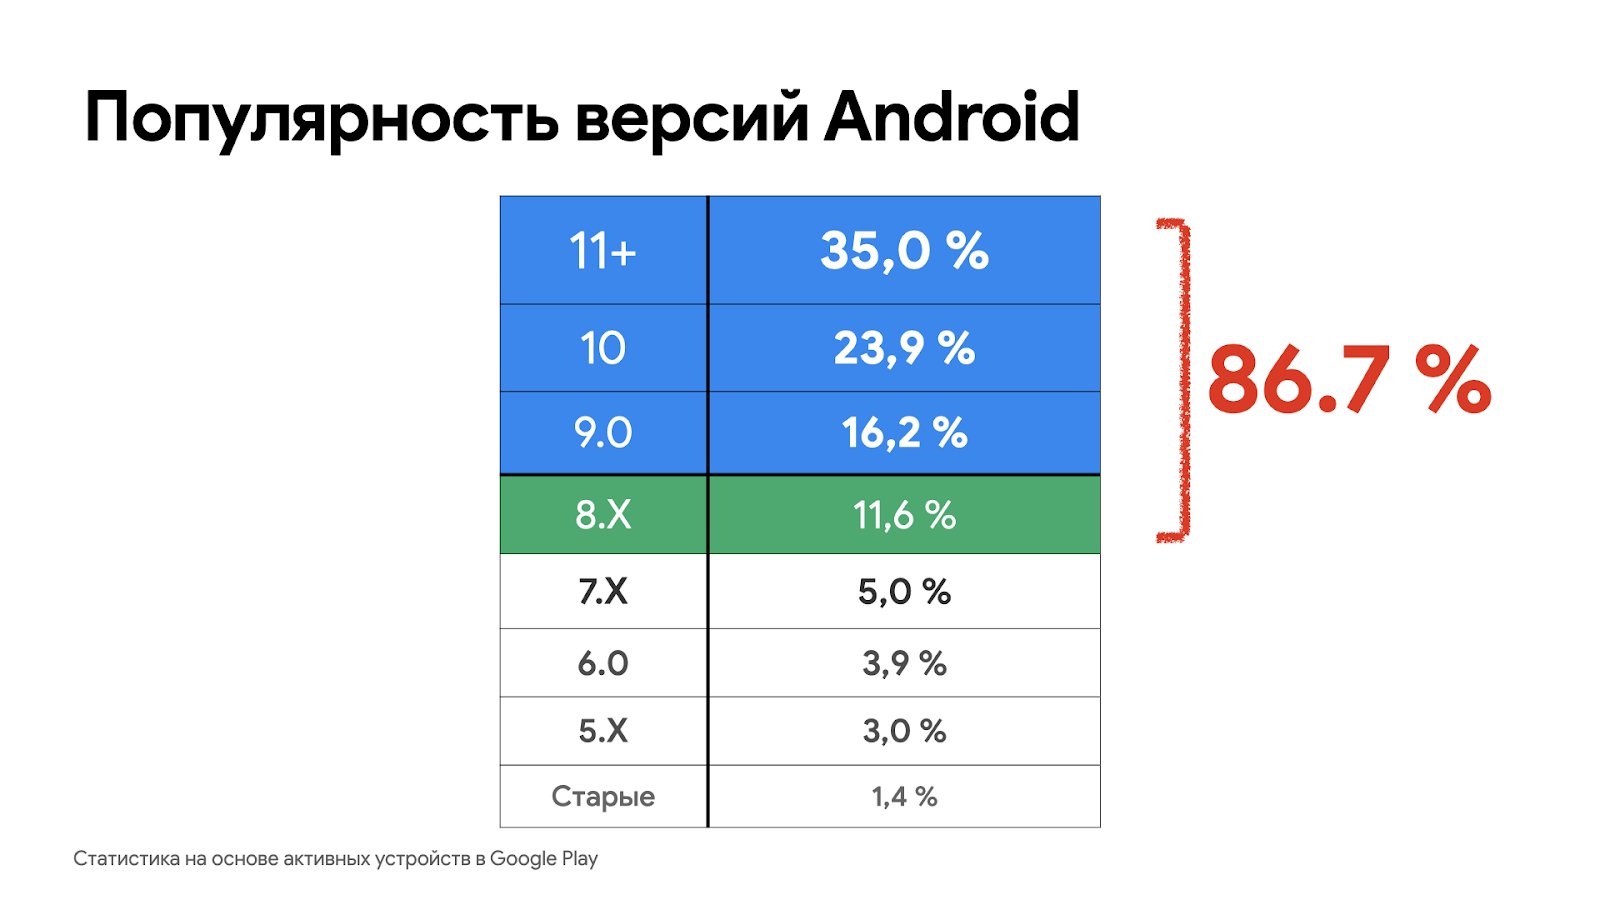 Популярность версий Android на июнь 2022 по данным Google Play